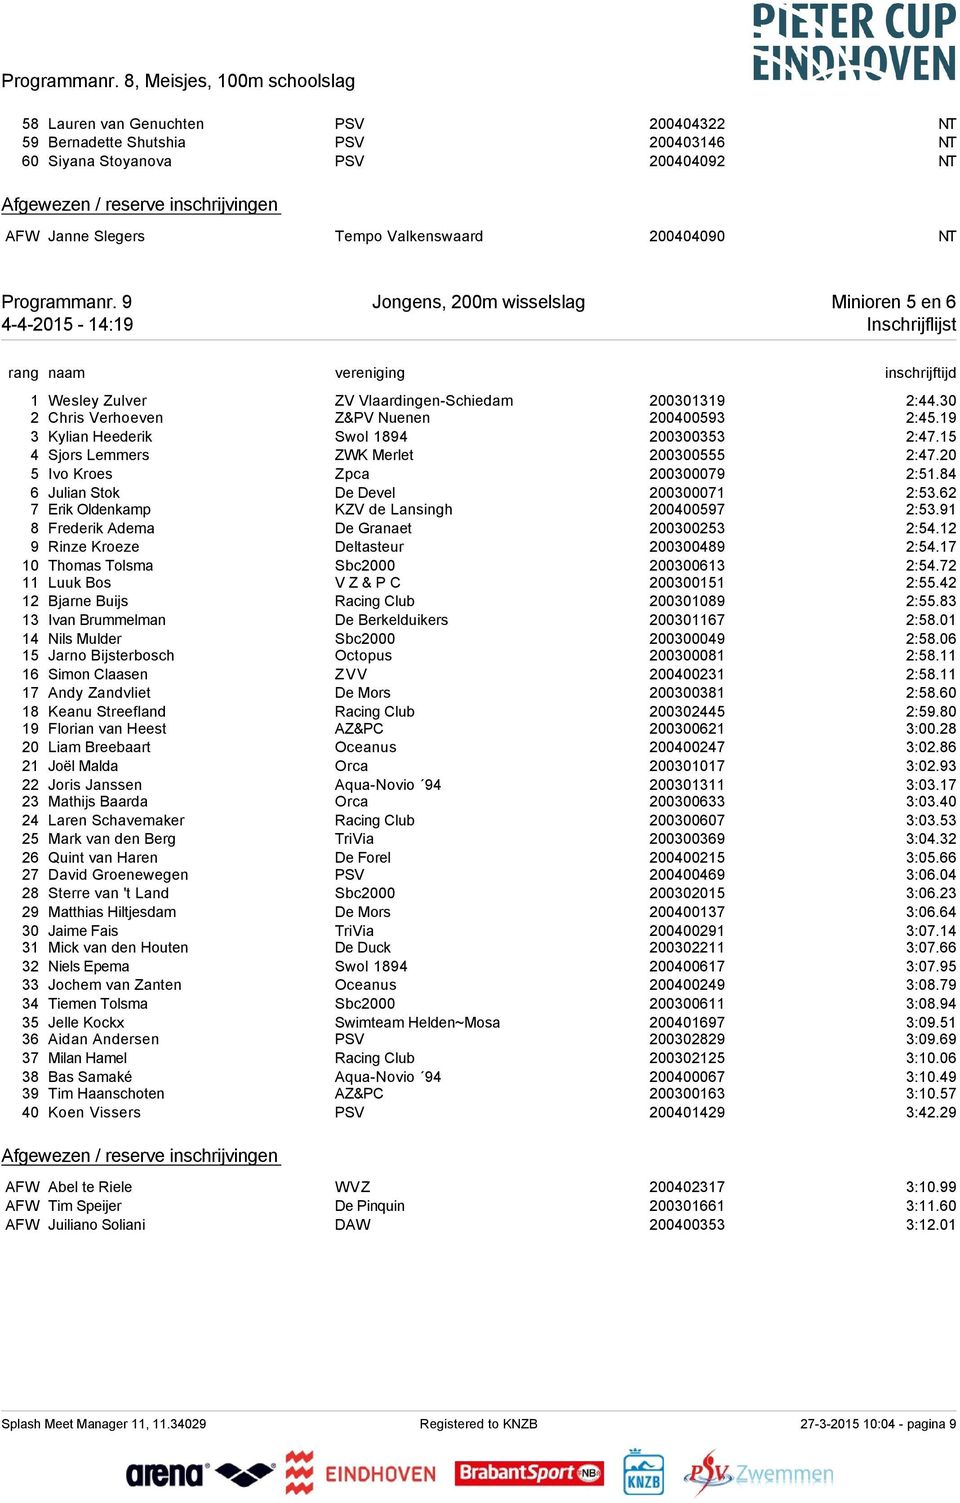 Jongens, 200m wisselslag Minioren 5 en 6 4-4-2015-14:19 Inschrijflijst 1 Wesley Zulver ZV Vlaardingen-Schiedam 200301319 2:44.30 2 Chris Verhoeven Z&PV Nuenen 200400593 2:45.